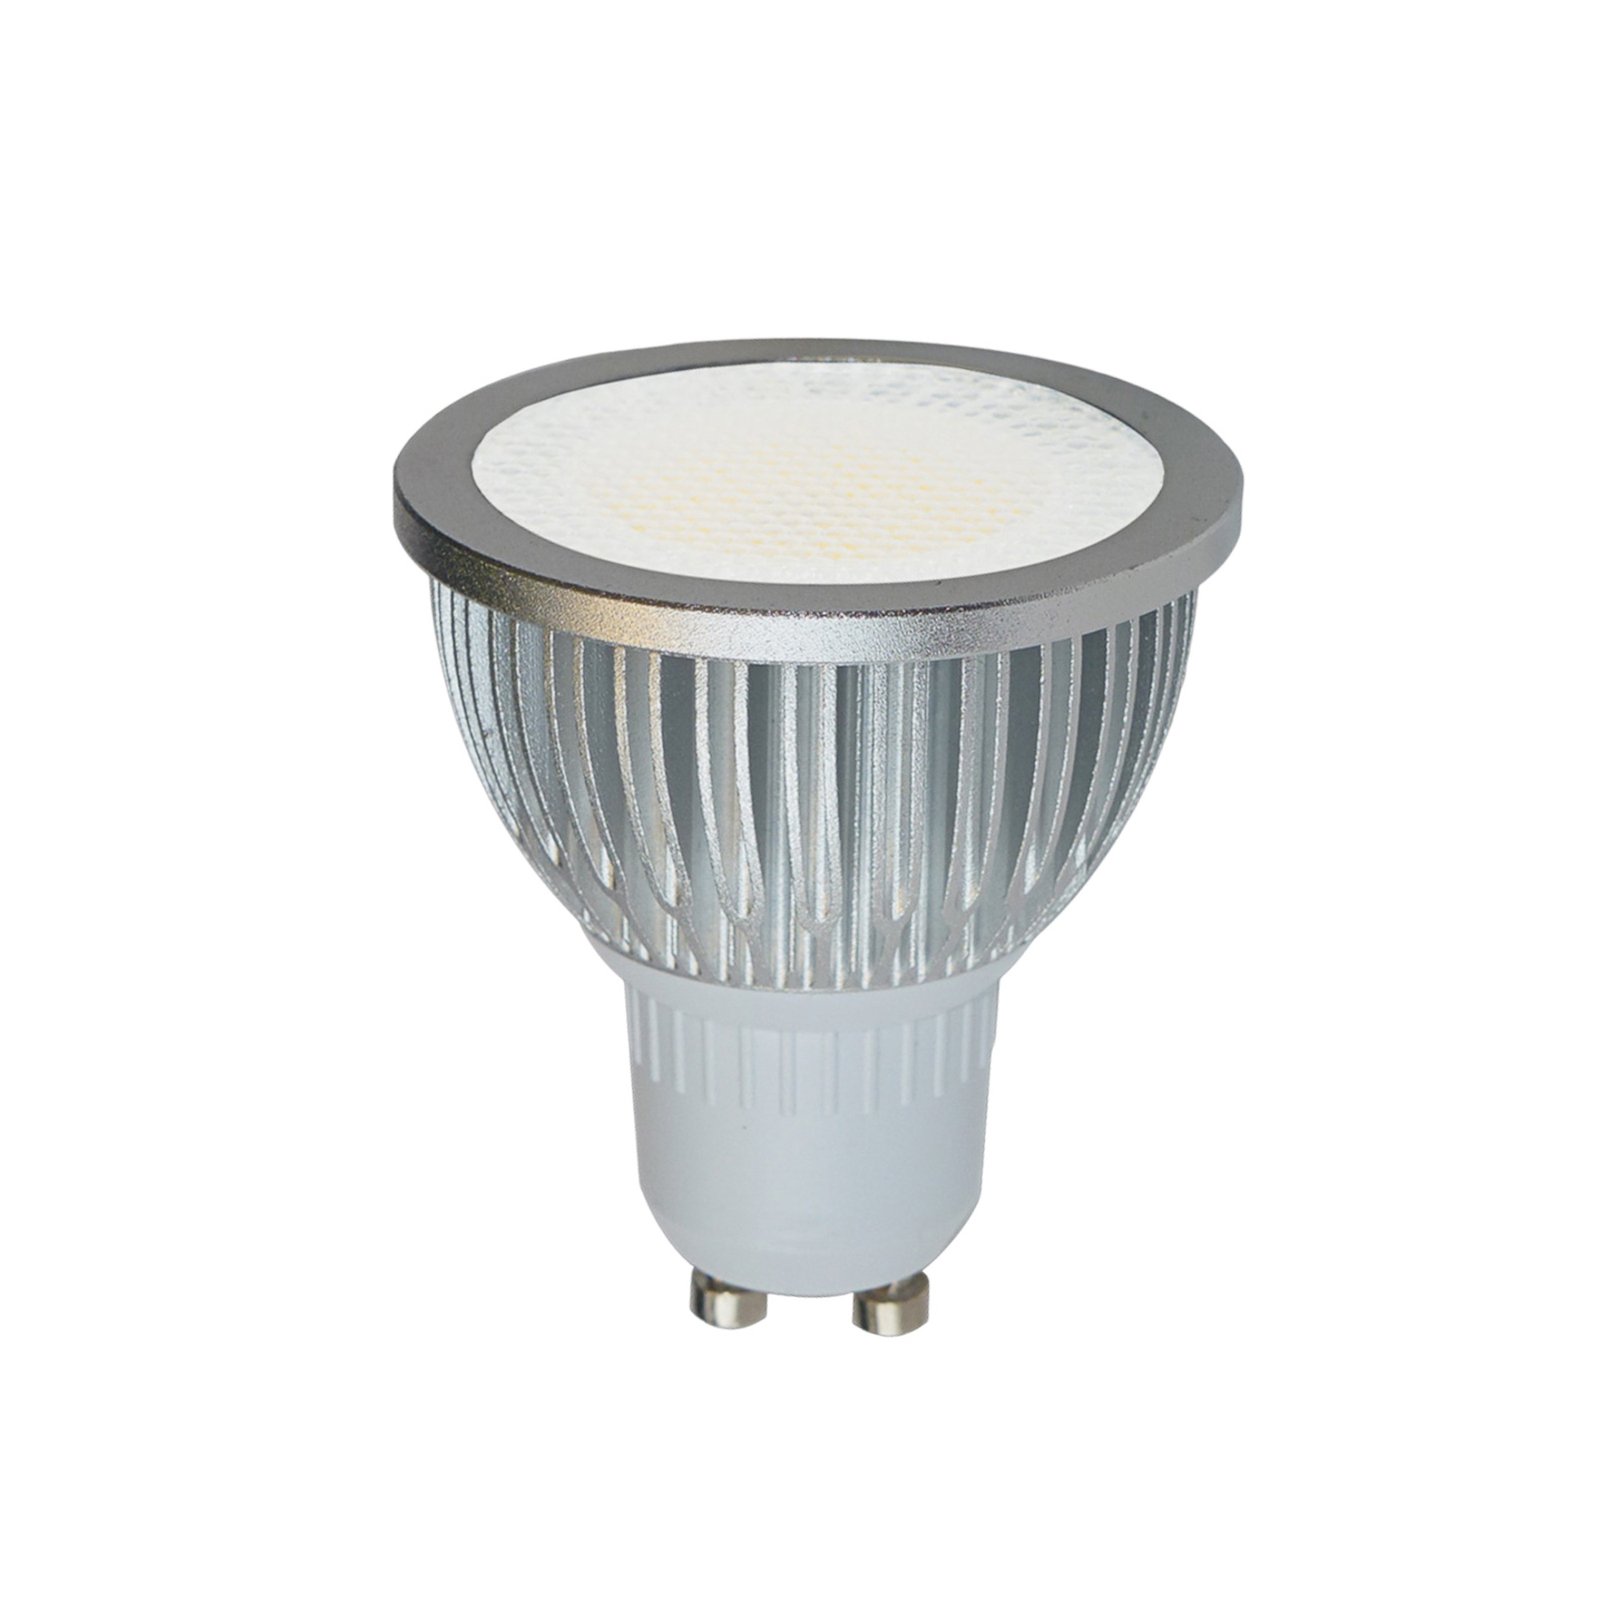 GU10 5W 829 high voltage LED bulb reflector, 85°